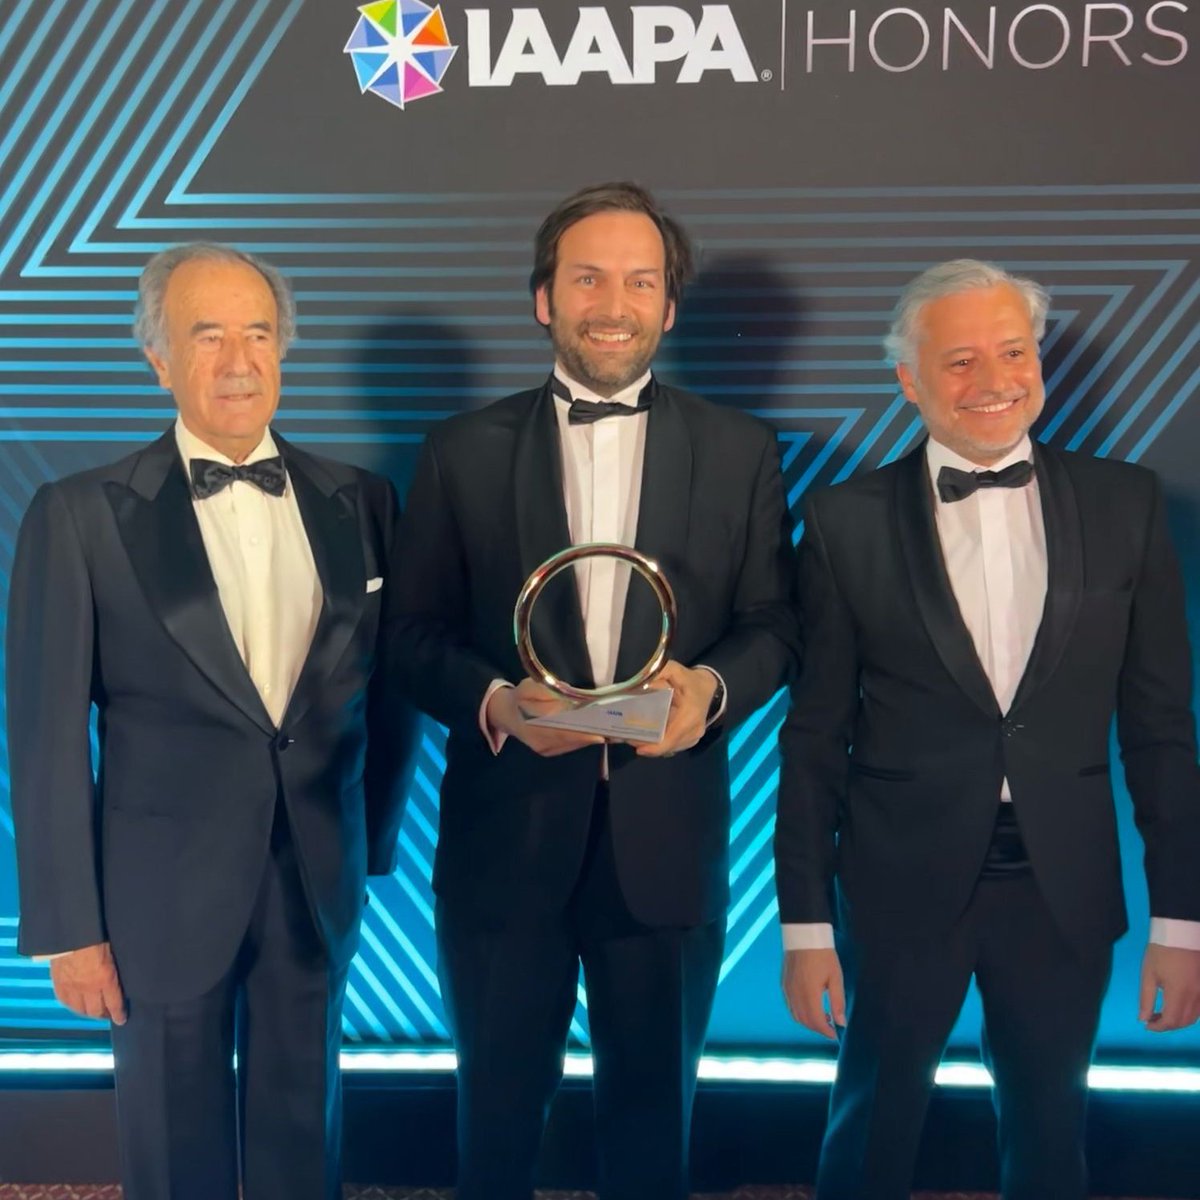 Es un orgullo que iniciativas #empresariales de nuestro país sean reconocidas a nivel mundial🌍 🎭@PuyduFou_espana está nominado al premio al mejor espectáculo del mundo #IAAPAHonors2024, es decir, al Óscar del sector ¡Enhorabuena!👏